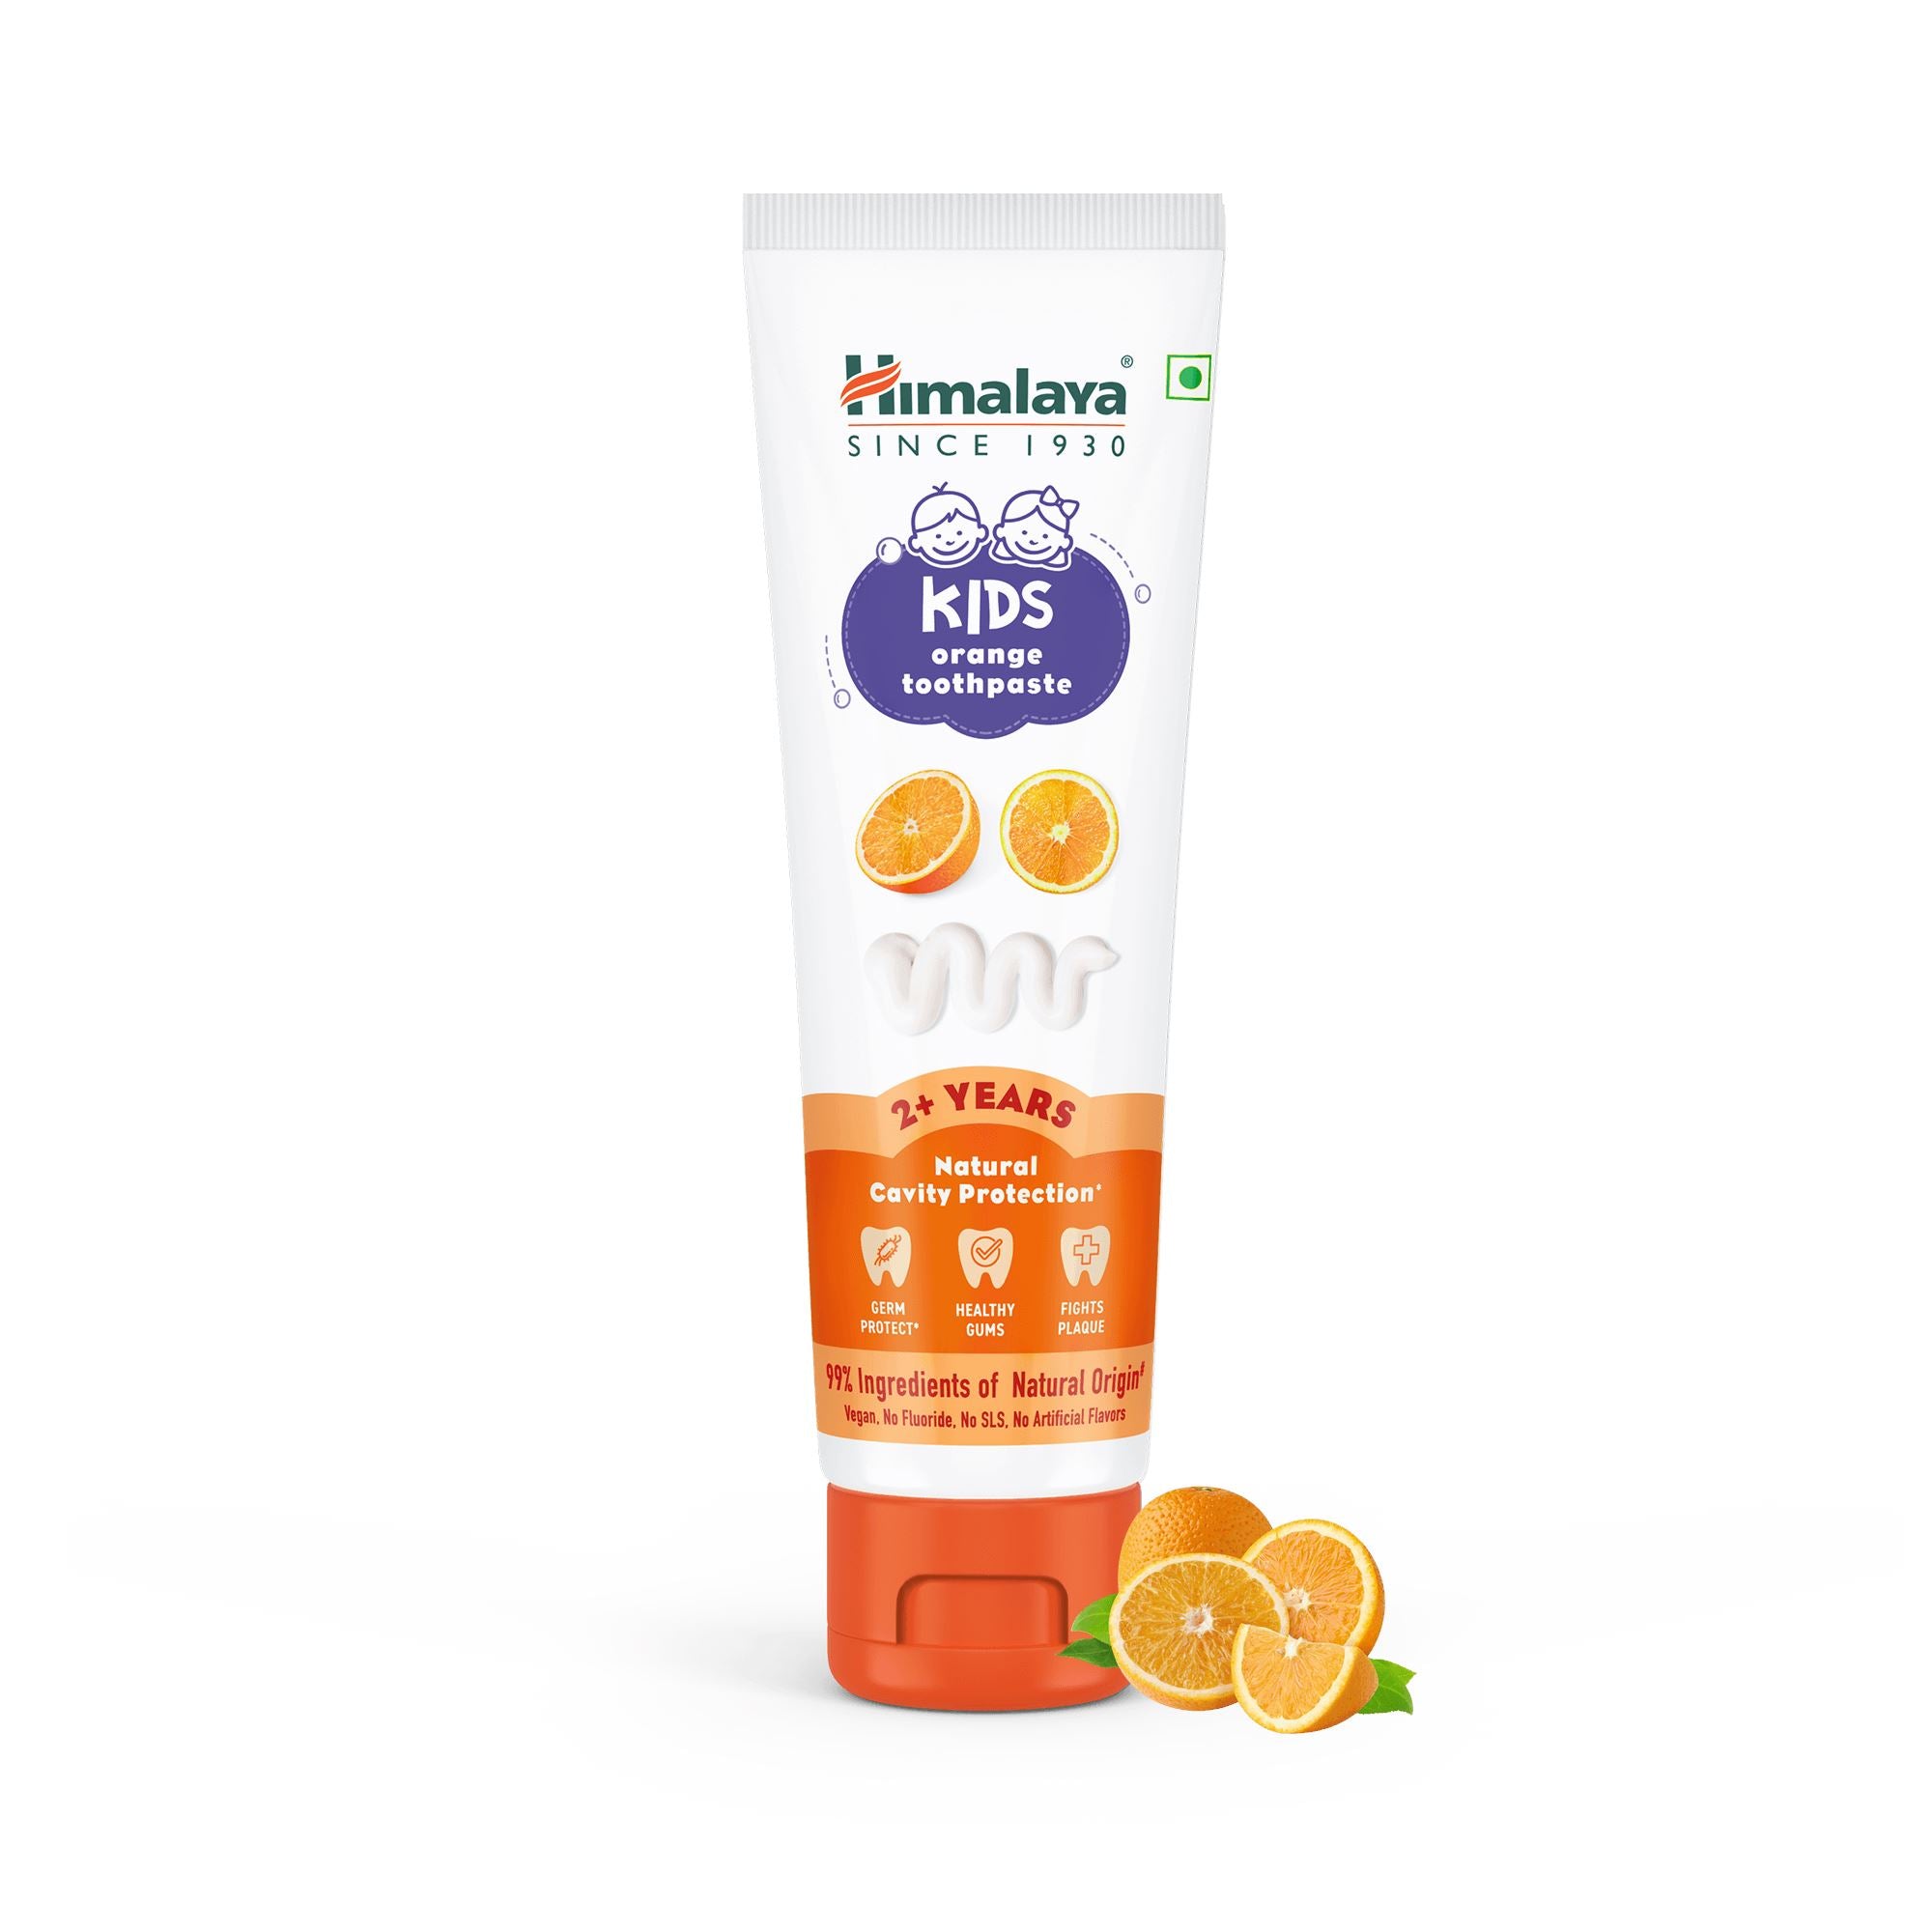 Himalaya Kids Orange Toothpaste 80g